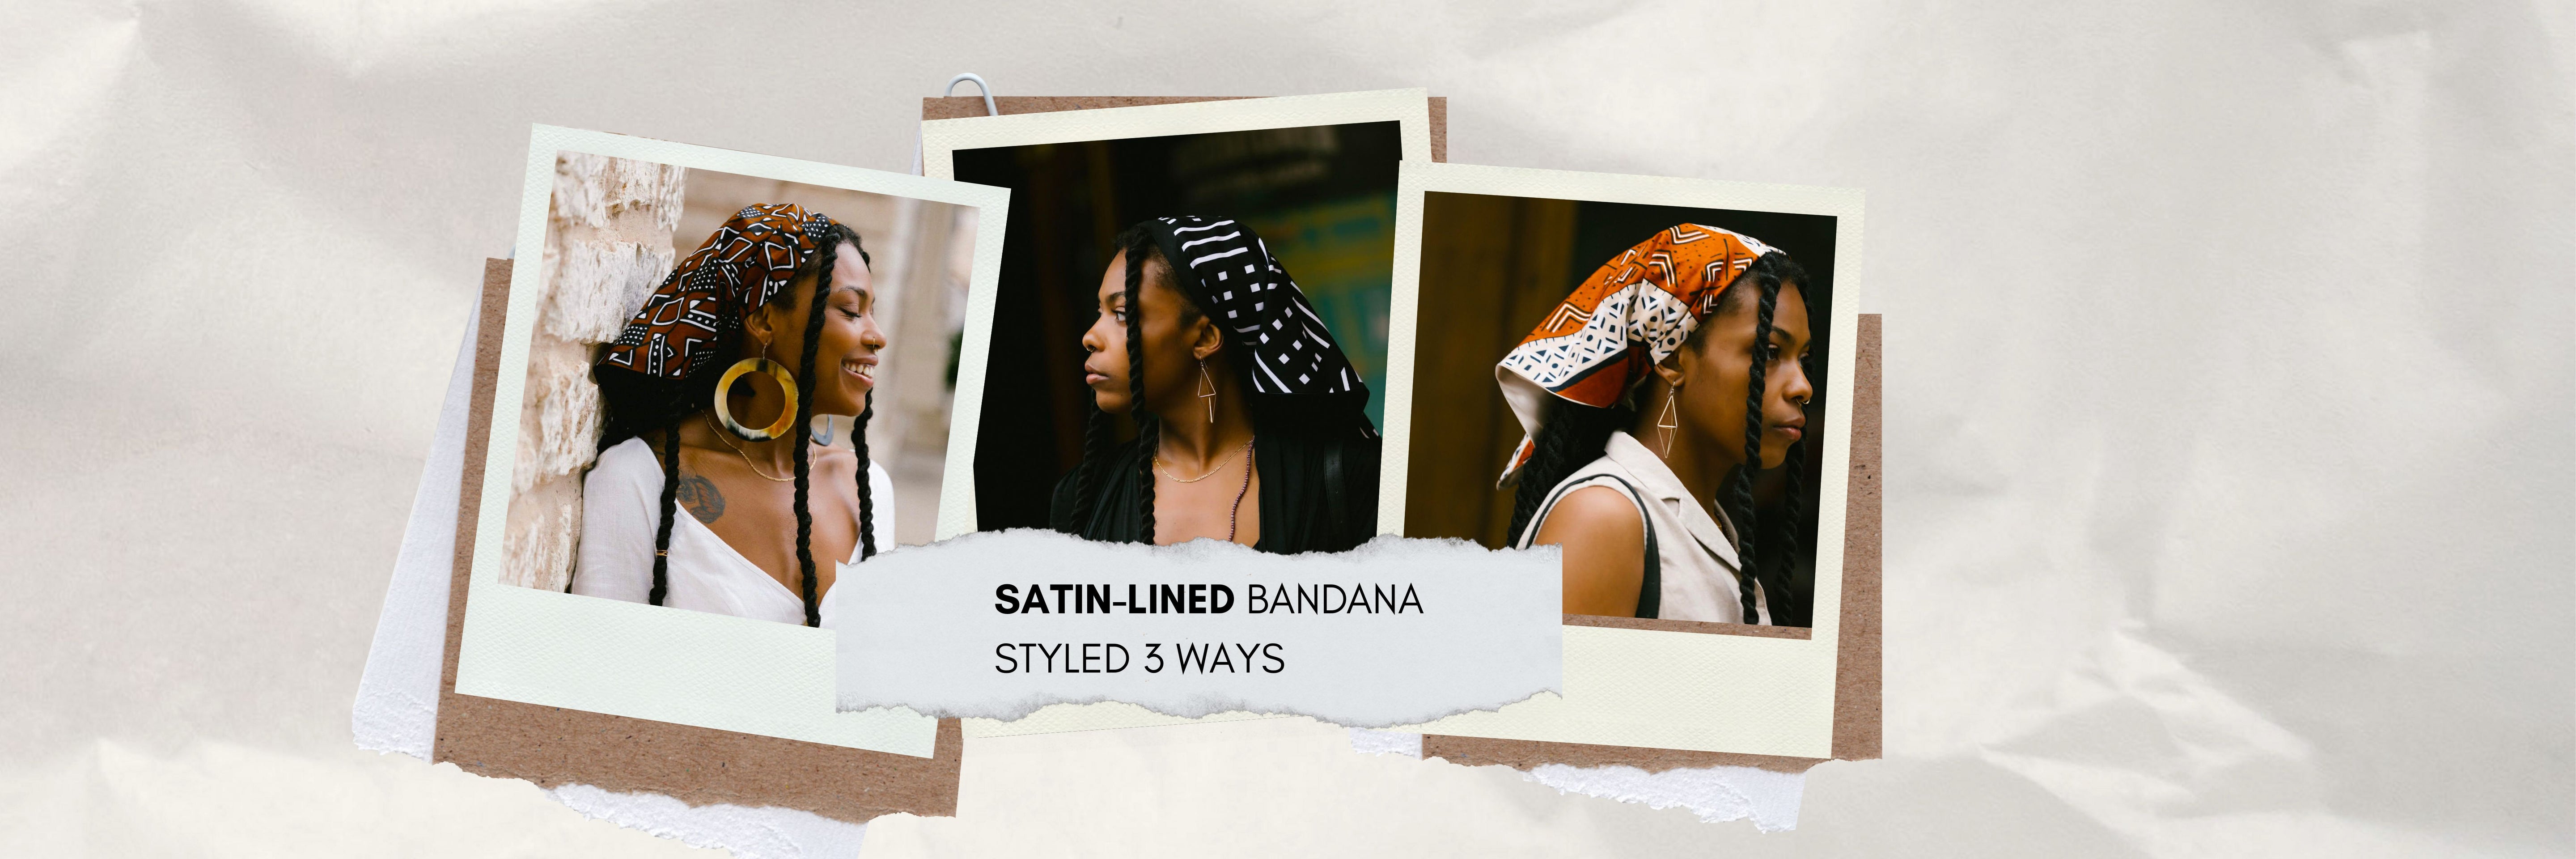 Satin-Lined Bandana Styled 3 Ways